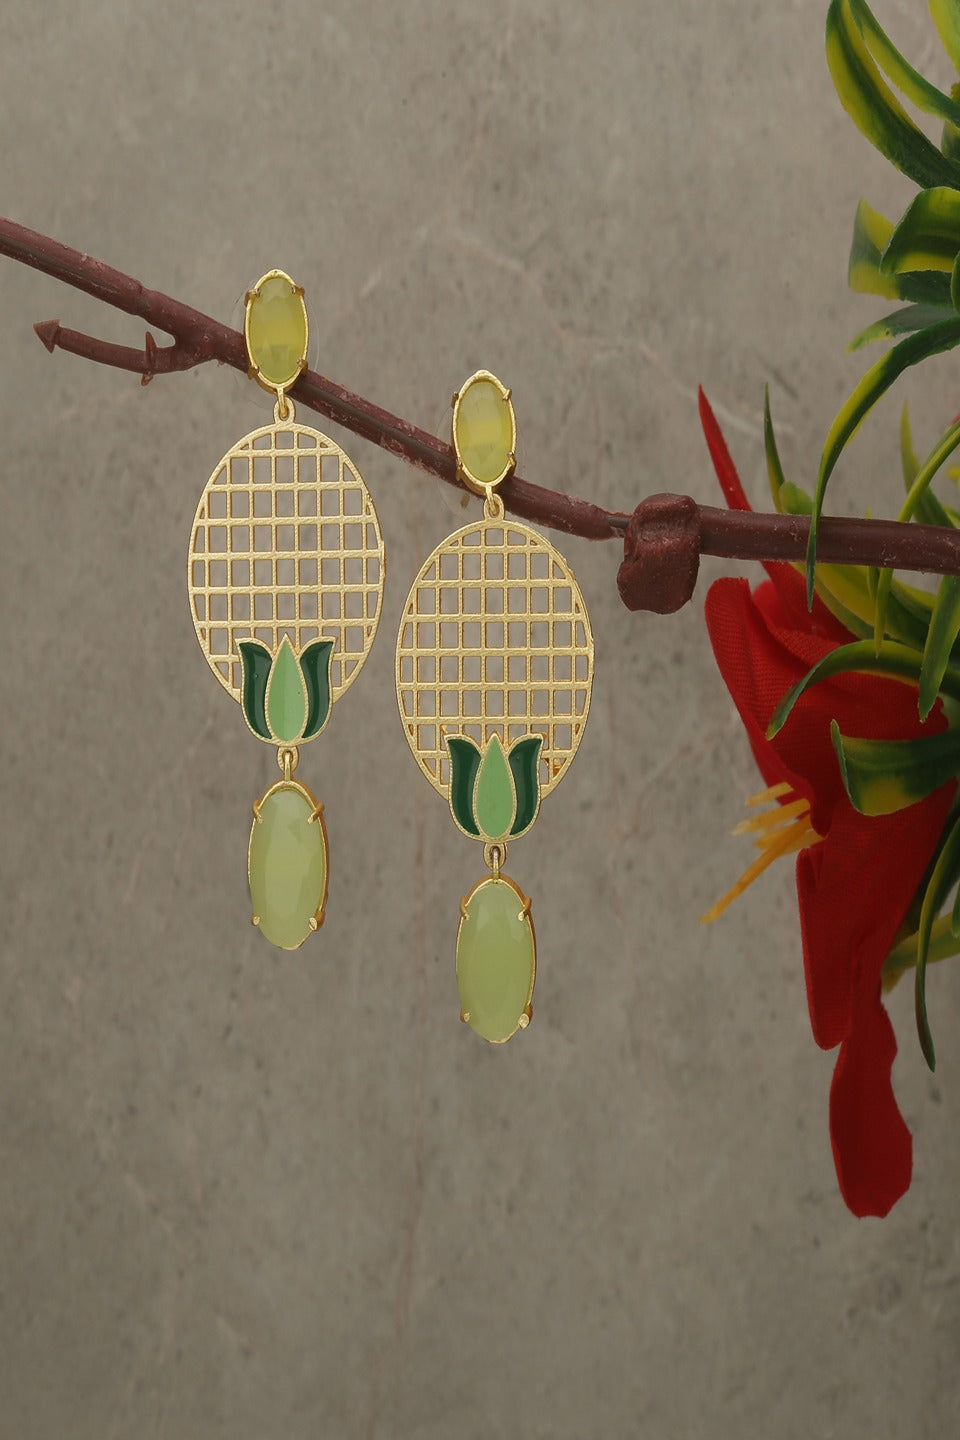 Stylish Brass Metal Drop Earrings for women